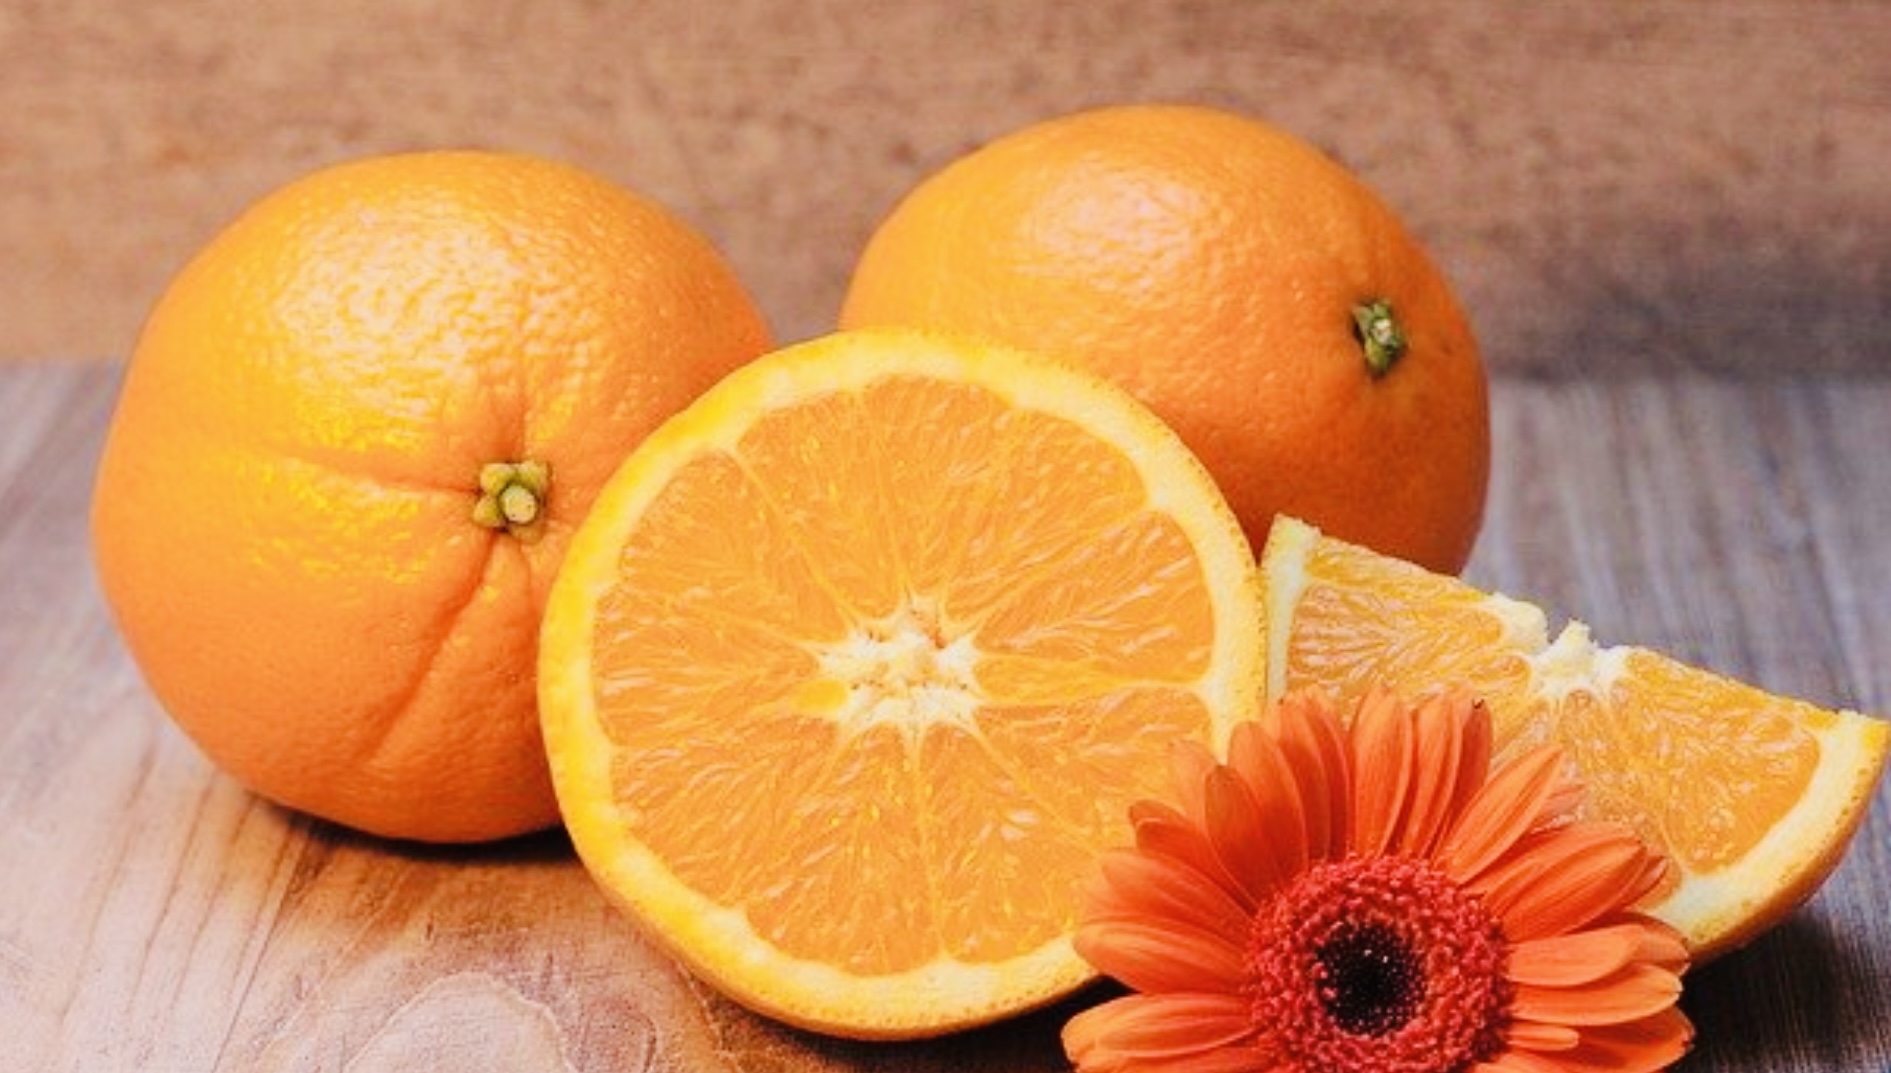 Hati-hati Jangan Makan Jeruk Terlalu Banyak, Bisa Kena Diare Akibat Kelebihan Vitamin C